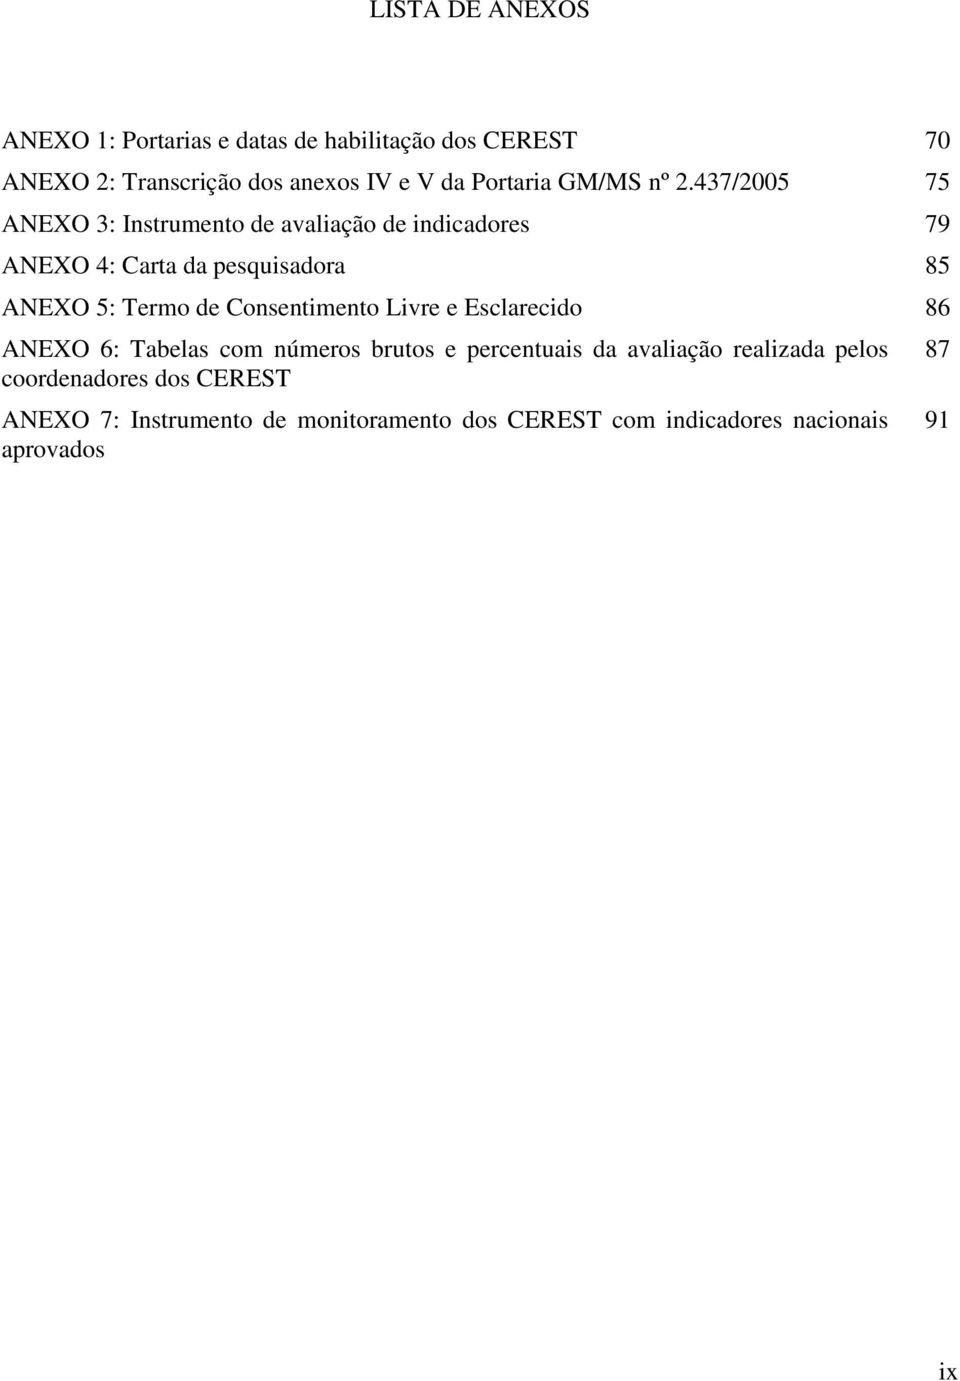 437/2005 75 ANEXO 3: Instrumento de avaliação de indicadores 79 ANEXO 4: Carta da pesquisadora 85 ANEXO 5: Termo de